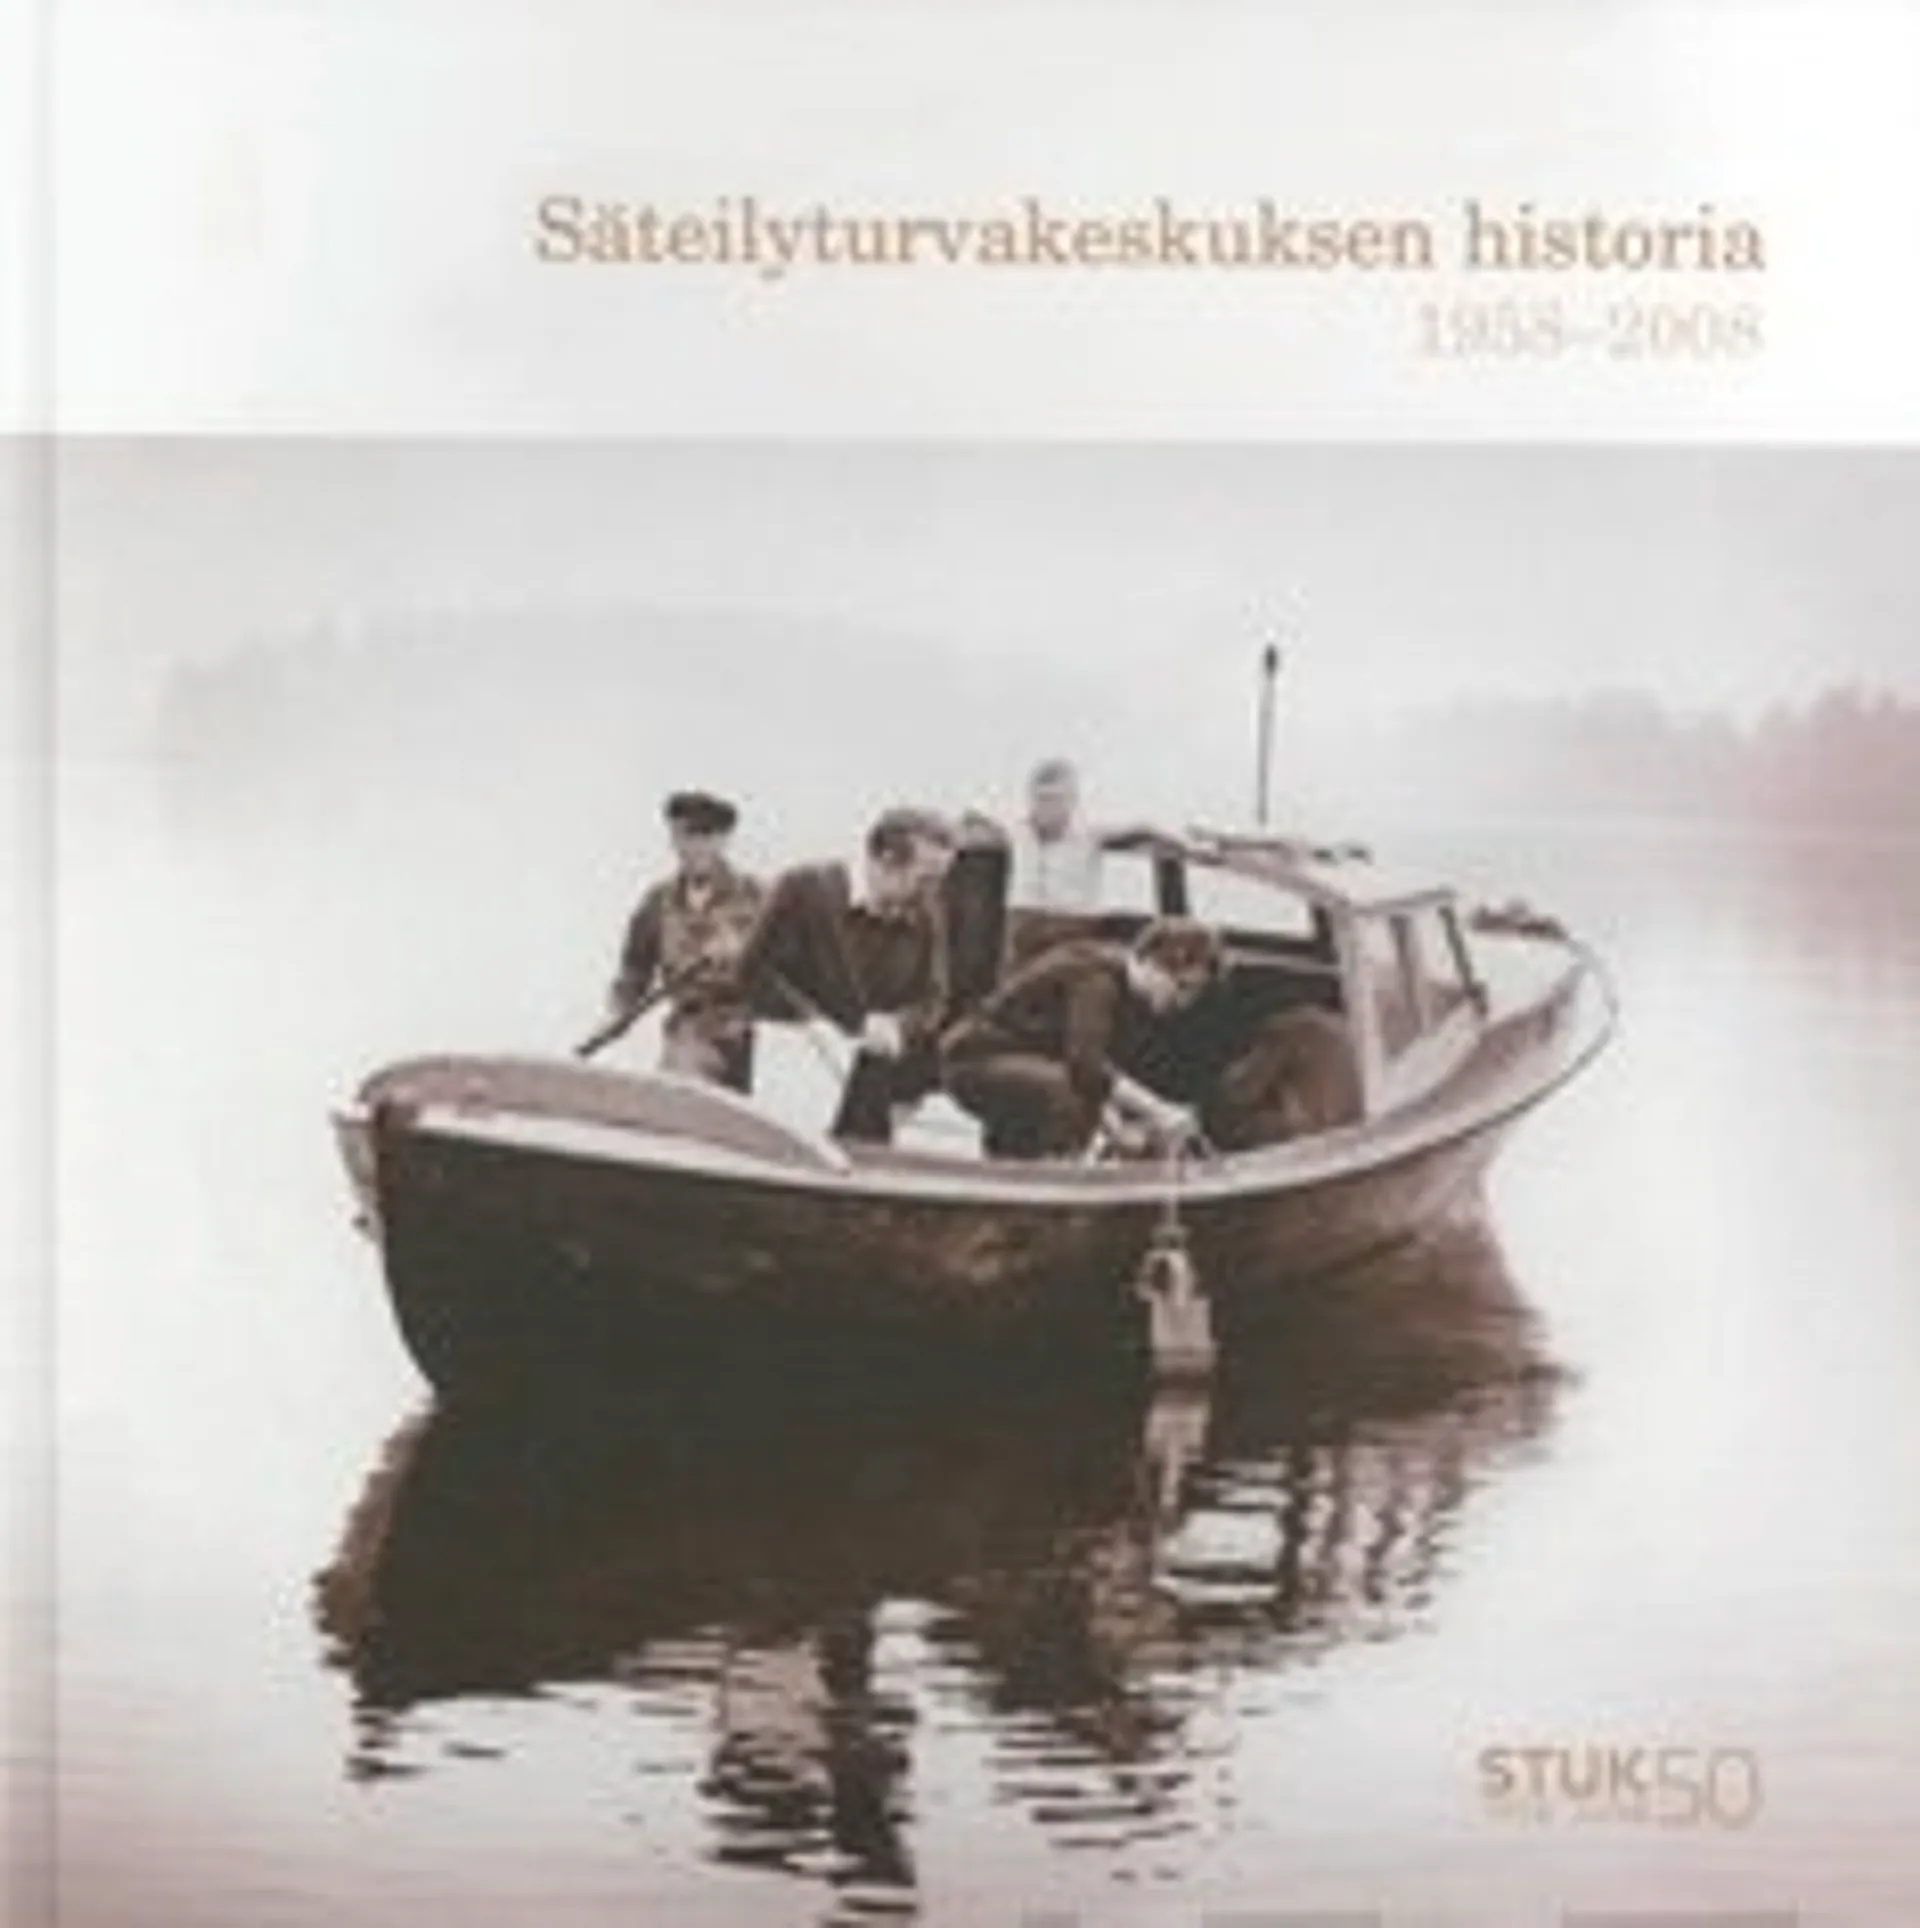 Säteilyturvakeskuksen historia 1958-2008